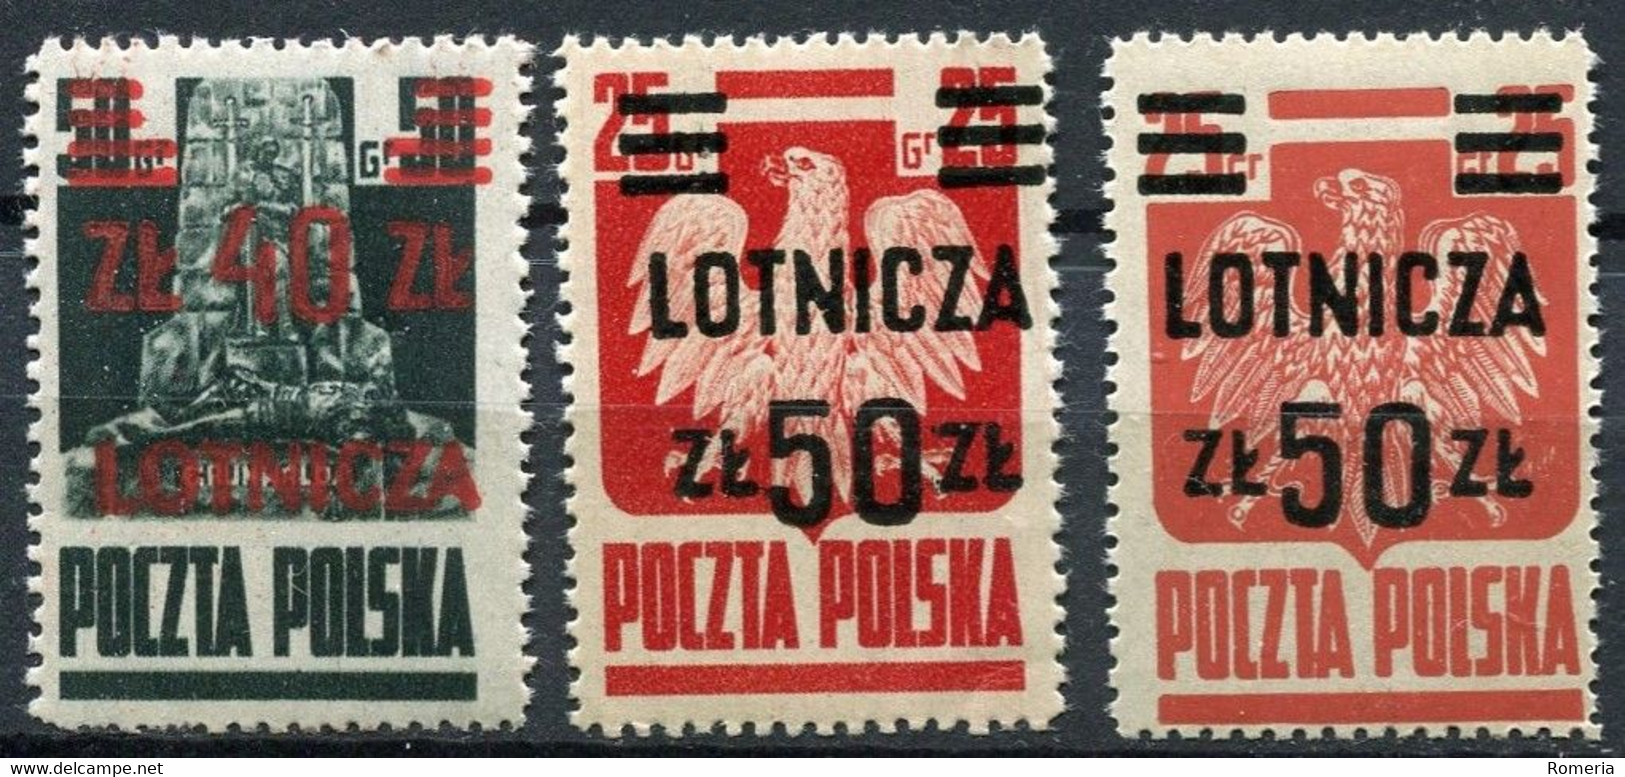 Pologne - 1925 -> 1948 - Lot Timbres Poste Aérienne ** Et Oblitérés - Voir Description - Used Stamps